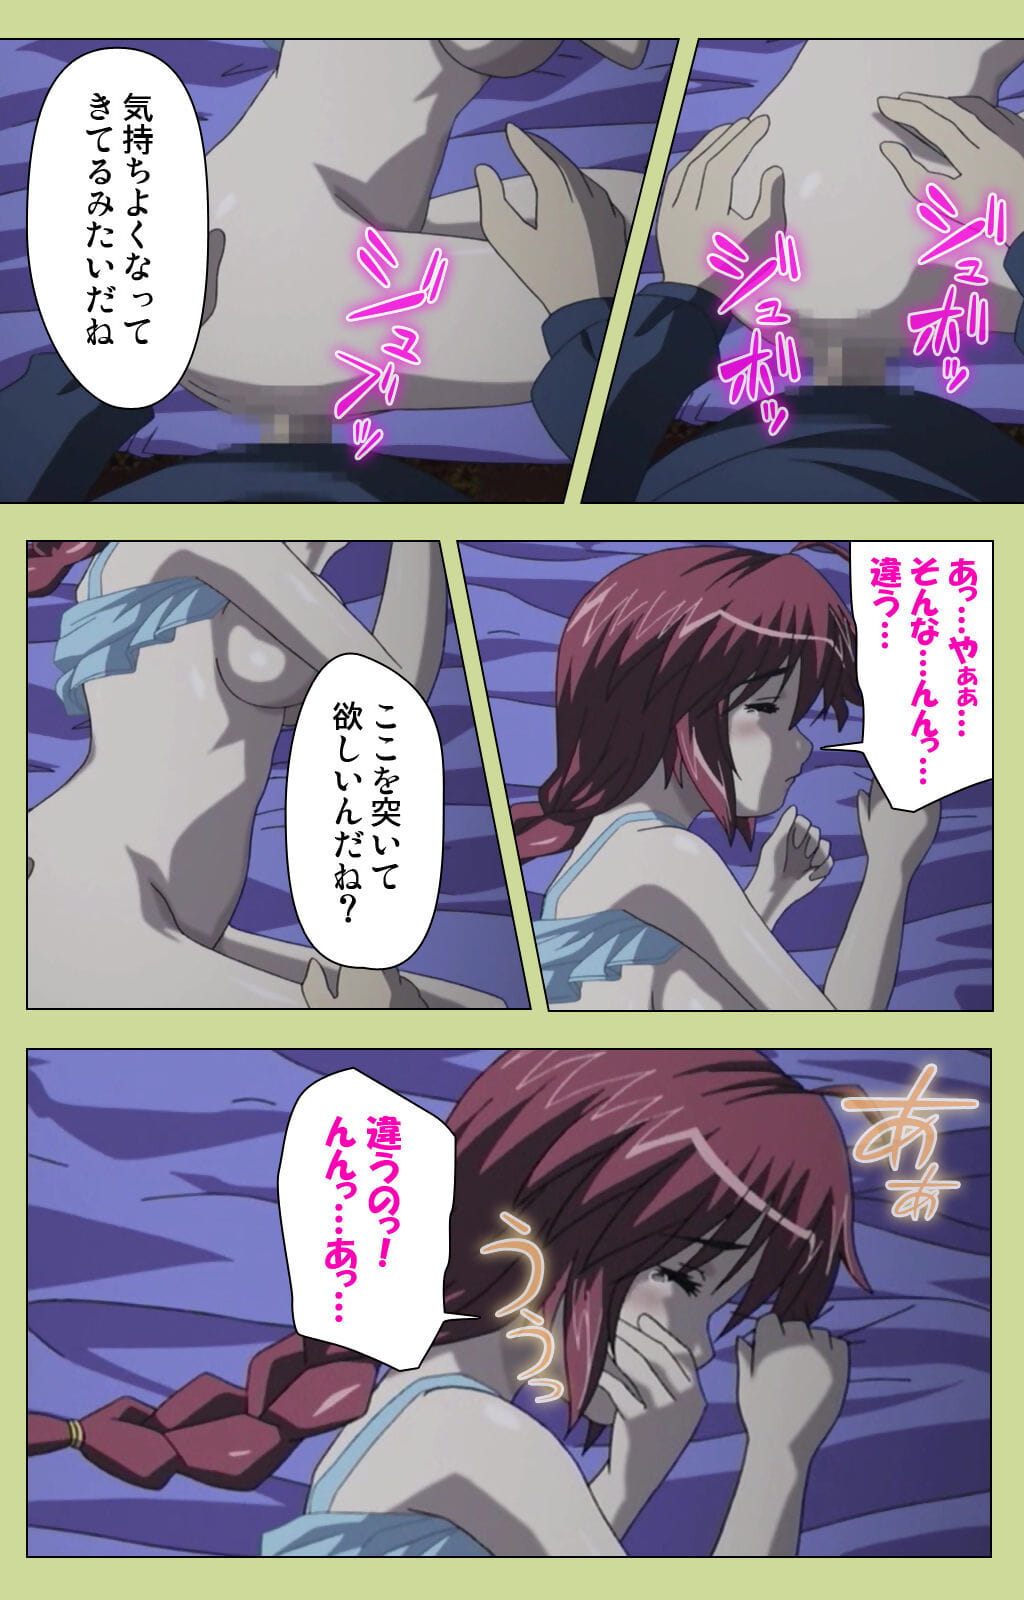 lune :हास्य: पूरा रंग seijin प्रतिबंध समलिंगी स्त्रियां gakuen विशेष पूरा प्रतिबंध हिस्सा 3